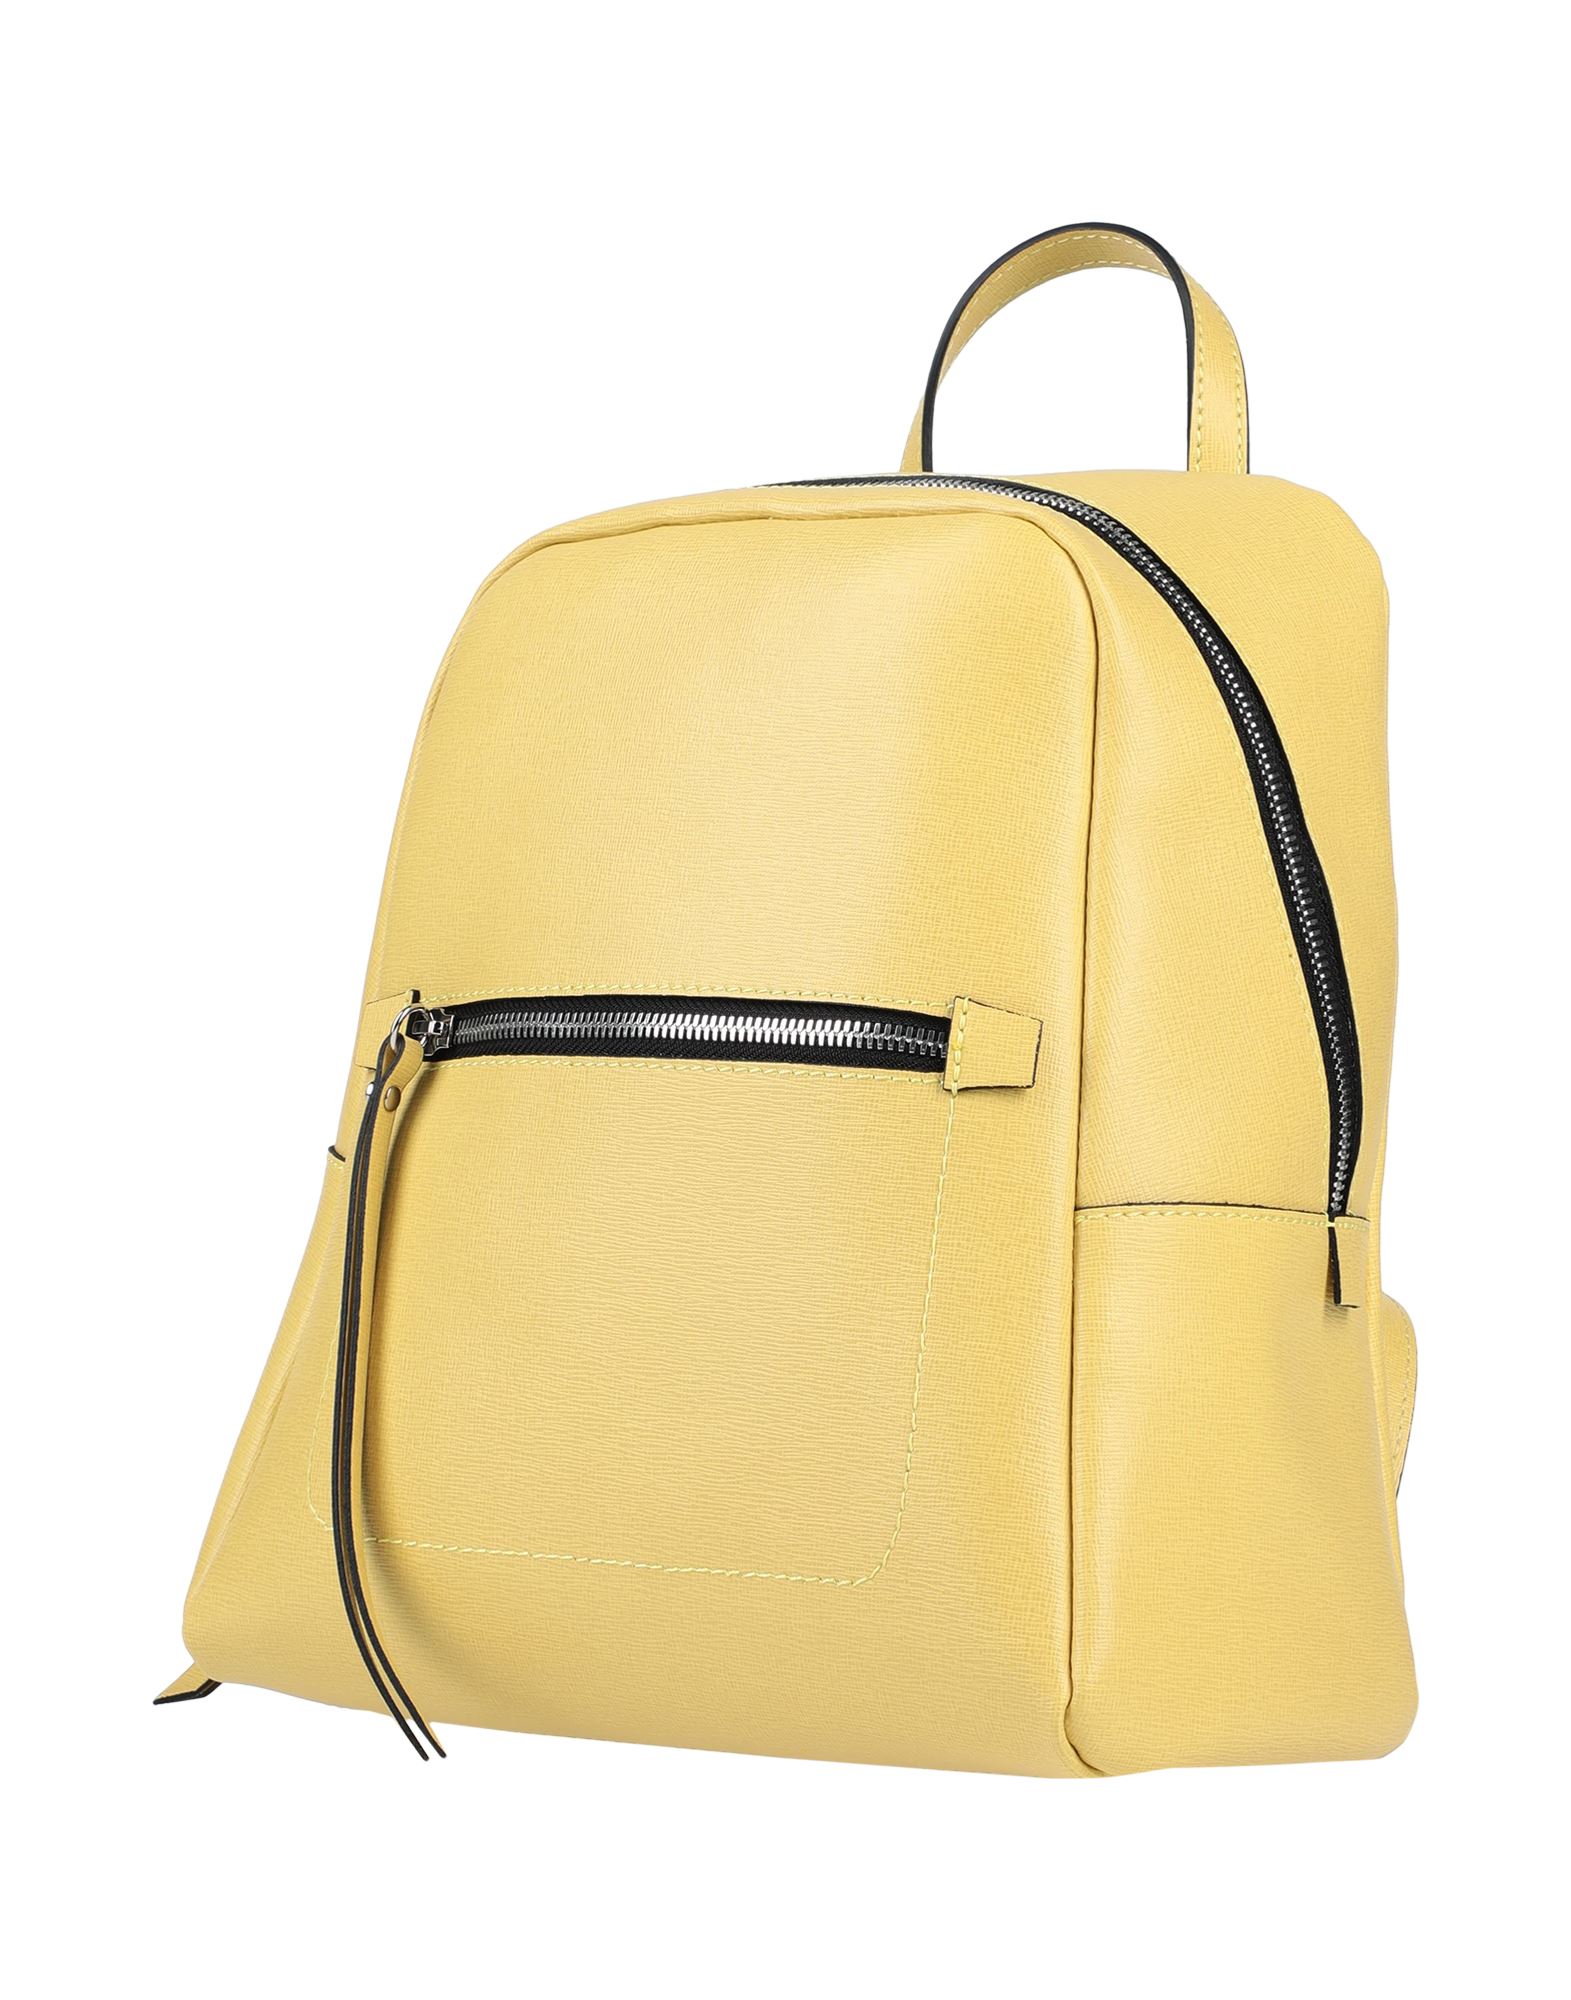 Gianni Chiarini Backpacks In Yellow